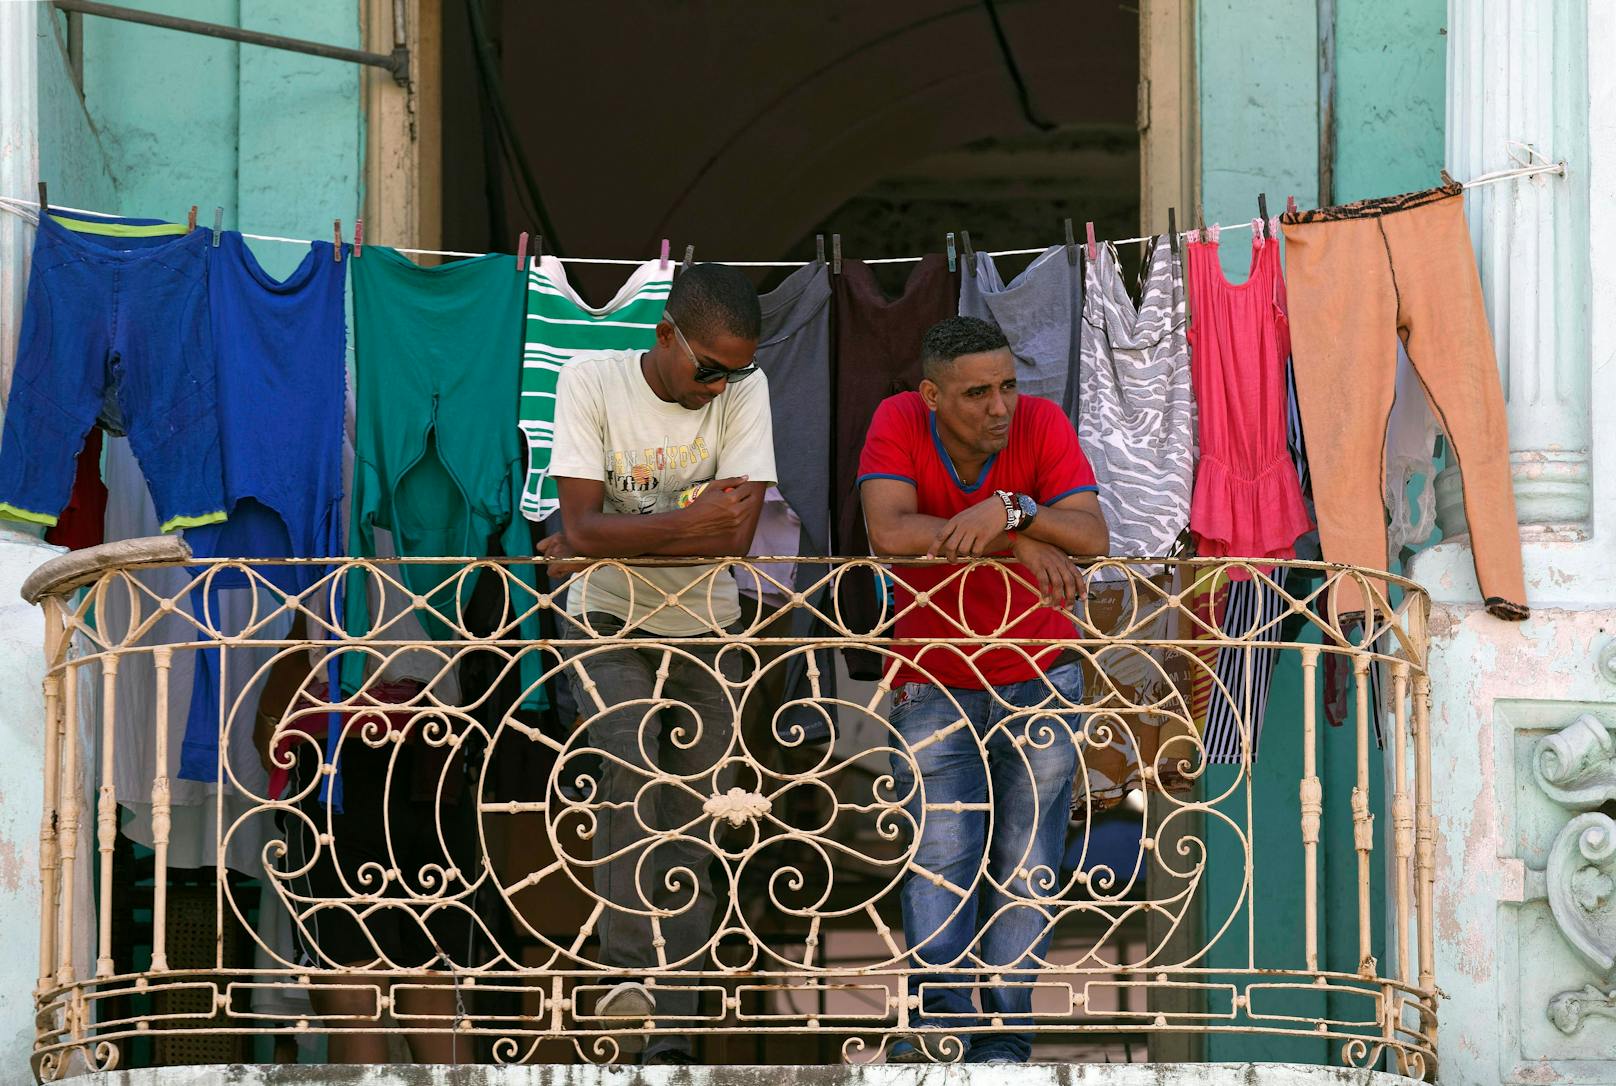 Putin bietet Kubanern Jobs, plötzlich sind sie im Krieg